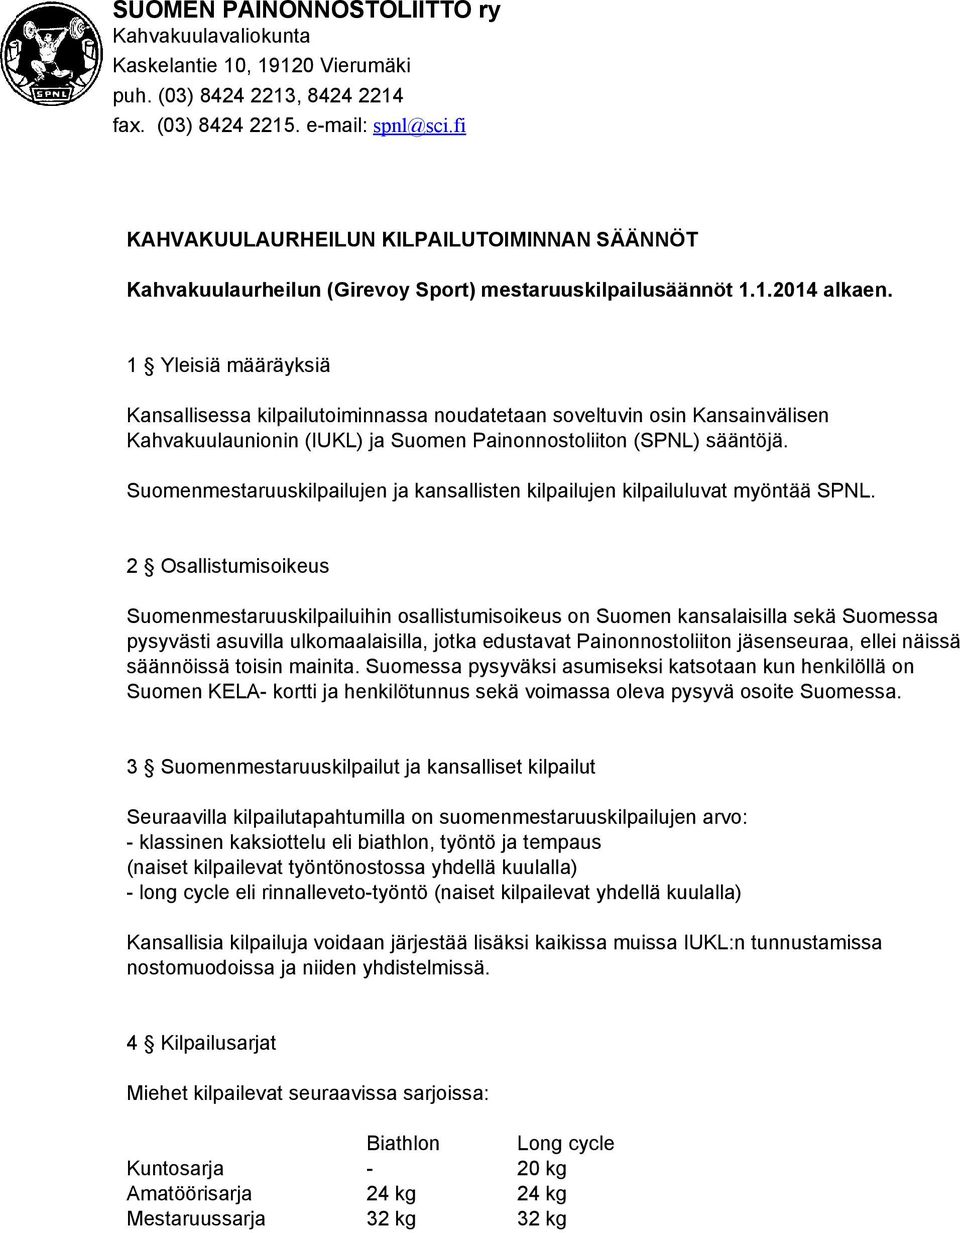 1 Yleisiä määräyksiä Kansallisessa kilpailutoiminnassa noudatetaan soveltuvin osin Kansainvälisen Kahvakuulaunionin (IUKL) ja Suomen Painonnostoliiton (SPNL) sääntöjä.